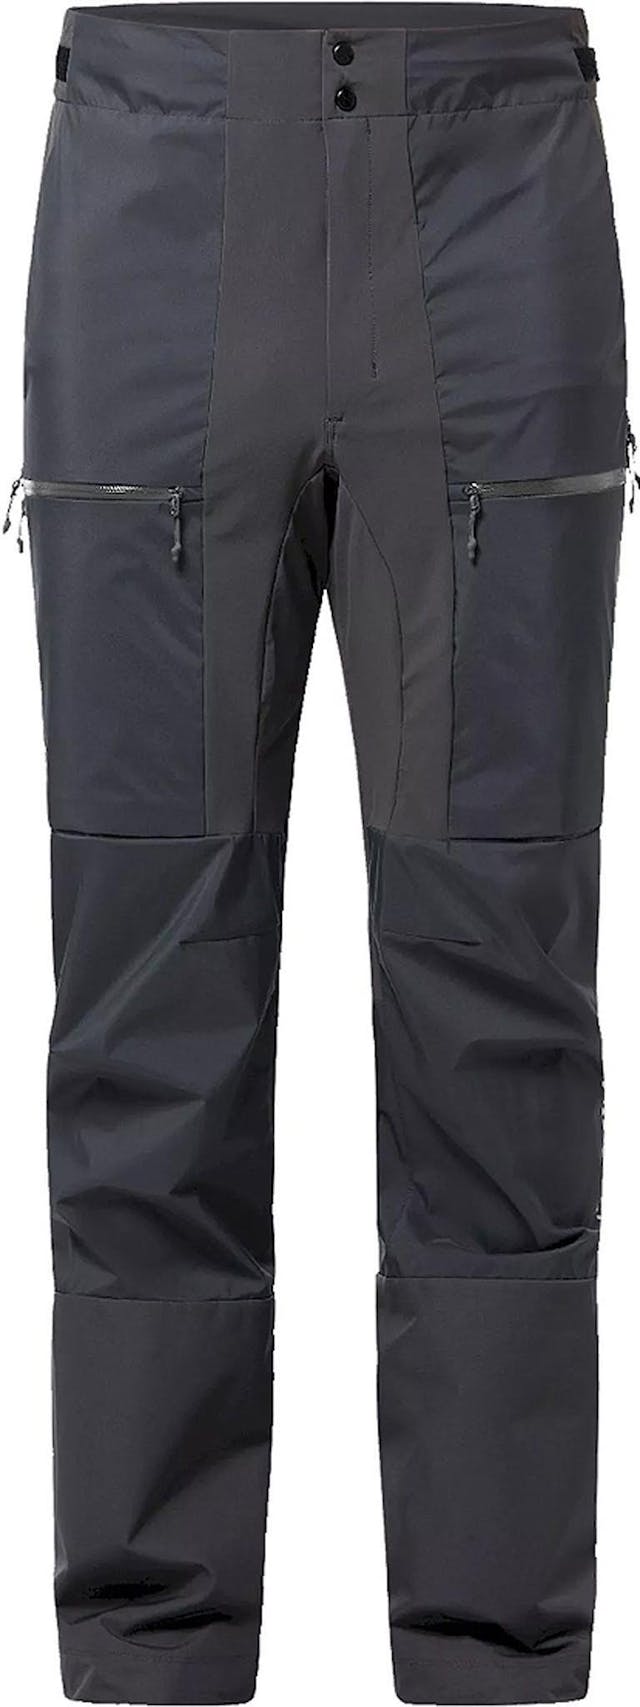 Image de produit pour Pantalon de randonnée hybride de L.I.M - Homme